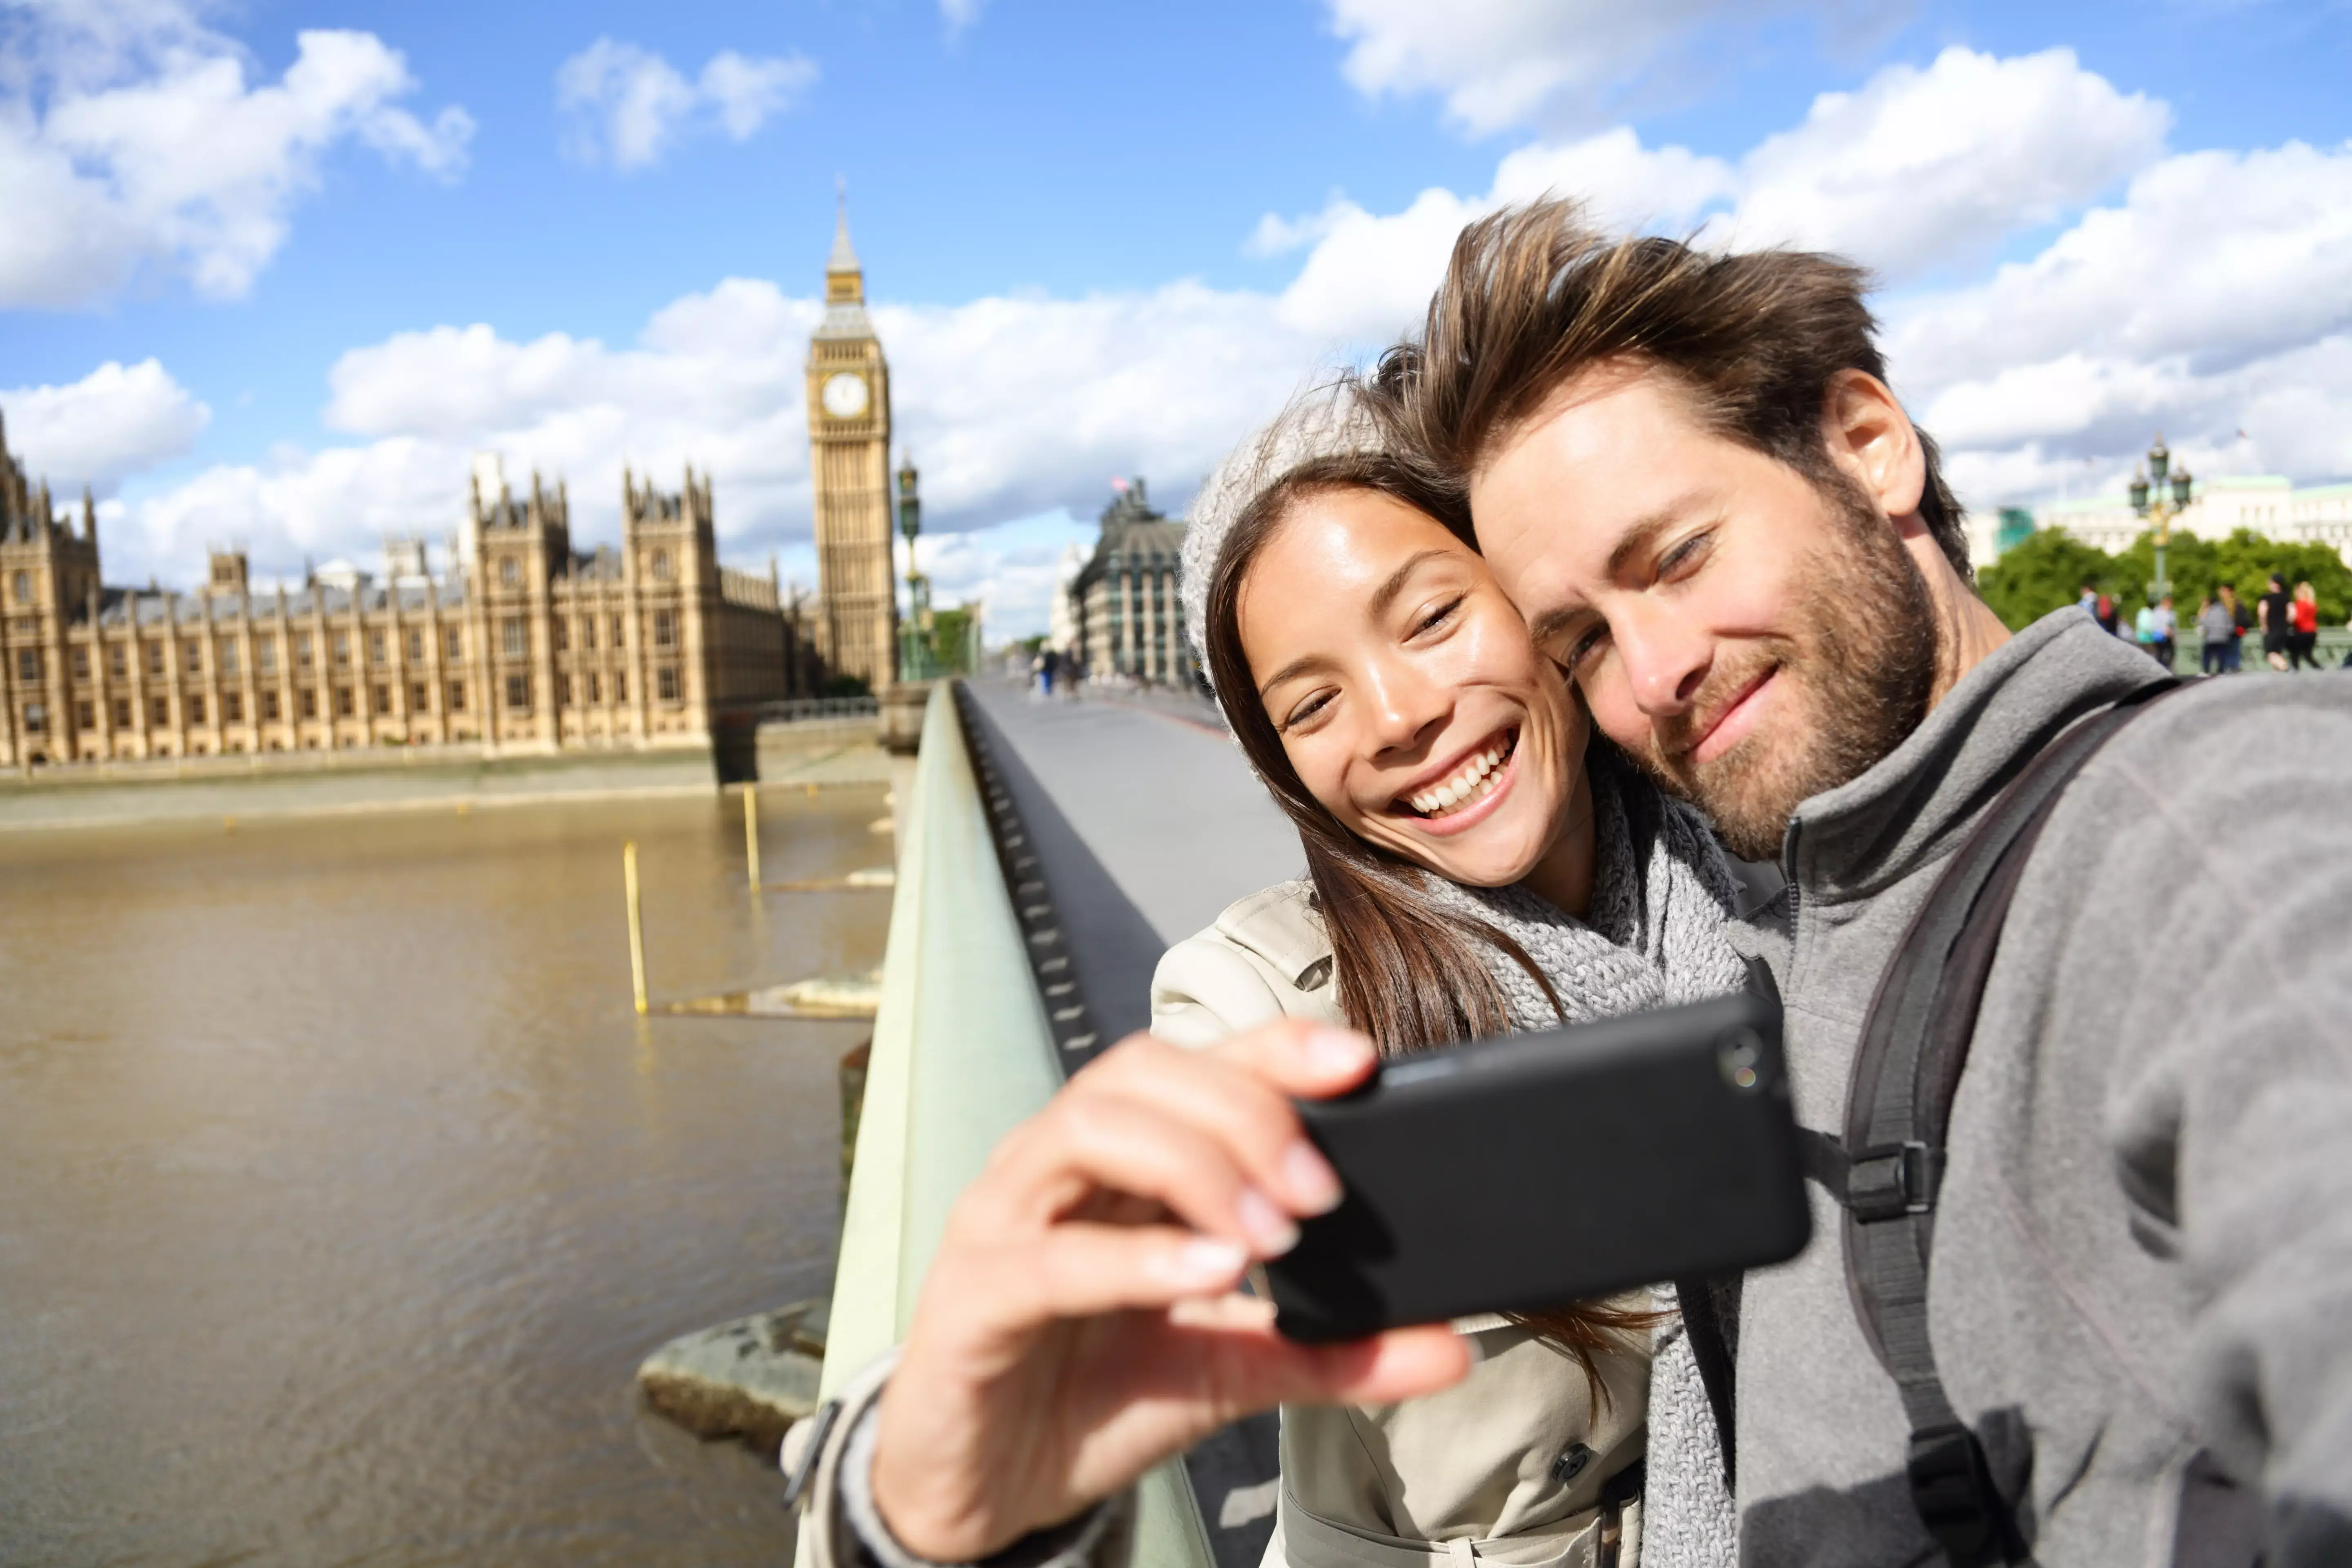 Селфи камера на телефоне. Туристы в Лондоне. Мужчина и женщина путешествие. Селфи на фоне достопримечательностей. Селфи в путешествии.